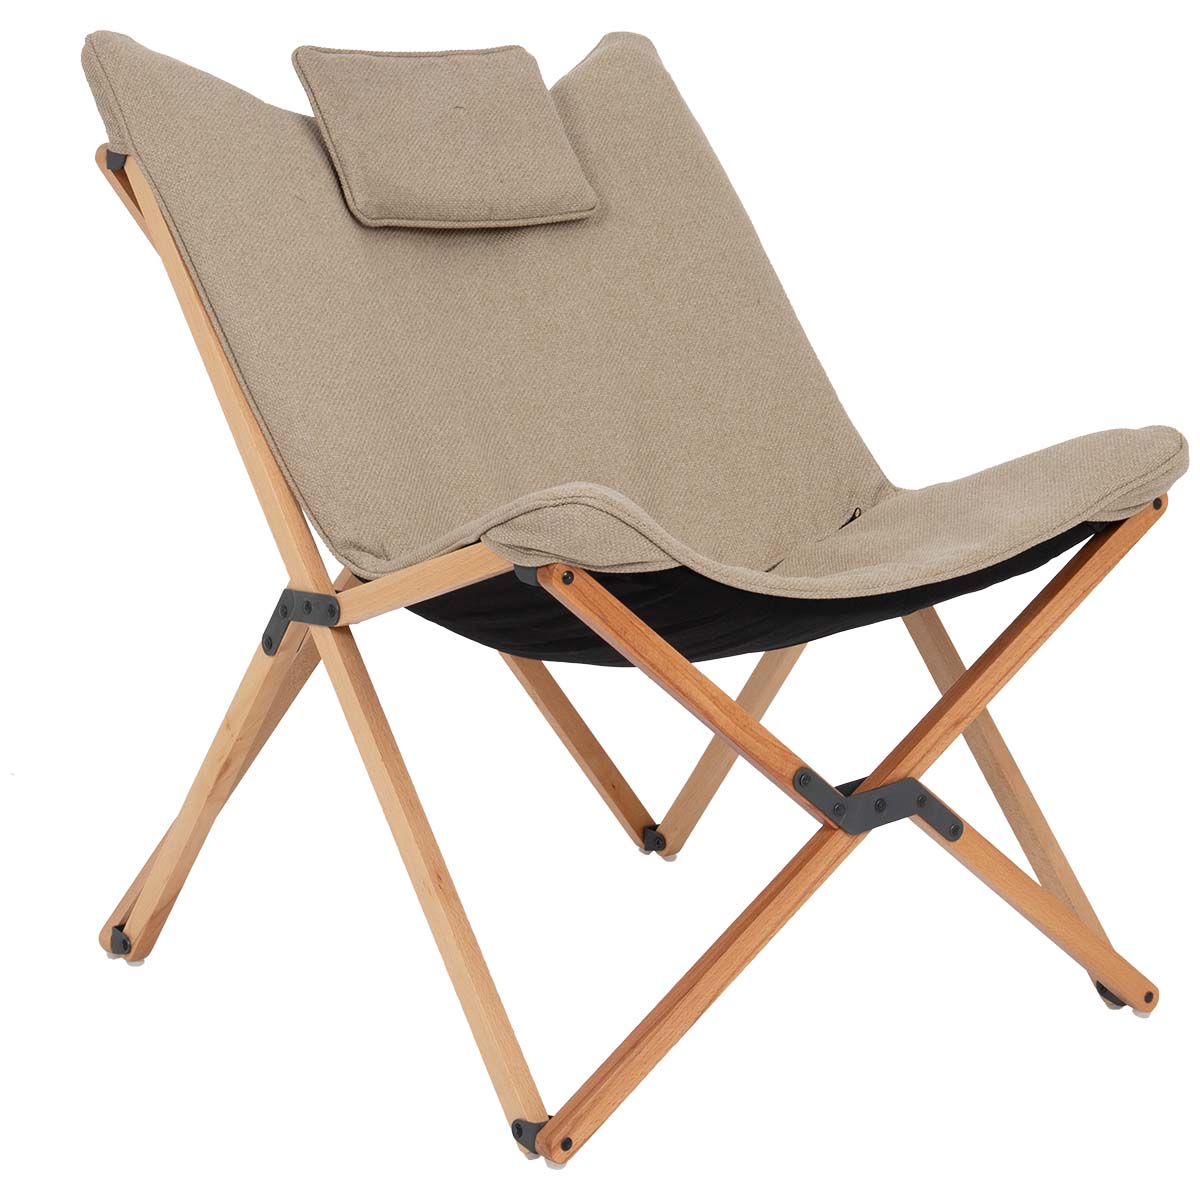 1200376 Een zeer luxe en comfortabele relaxstoel. Deze stoel is voorzien van een stijlvol, lichtkleurige houten frame en de zitting is gemaakt van de stof Nika. Stof Nika kentmerkt zich aan de een zachte touch met een robuuste uitstraling. Daarnaast is deze stof voorzien van een comfortabele gepolsterde vulling. Door de combinatie van de gepolsterde stof, de extra brede en diepe zit en het hoofdkussen is de stoel zeer comfortabel. De stoel is eenvoudig mee te nemen door het inklapbare frame en kan zowel in de woonkamer, op het balkon of in de tuin worden gebruikt!